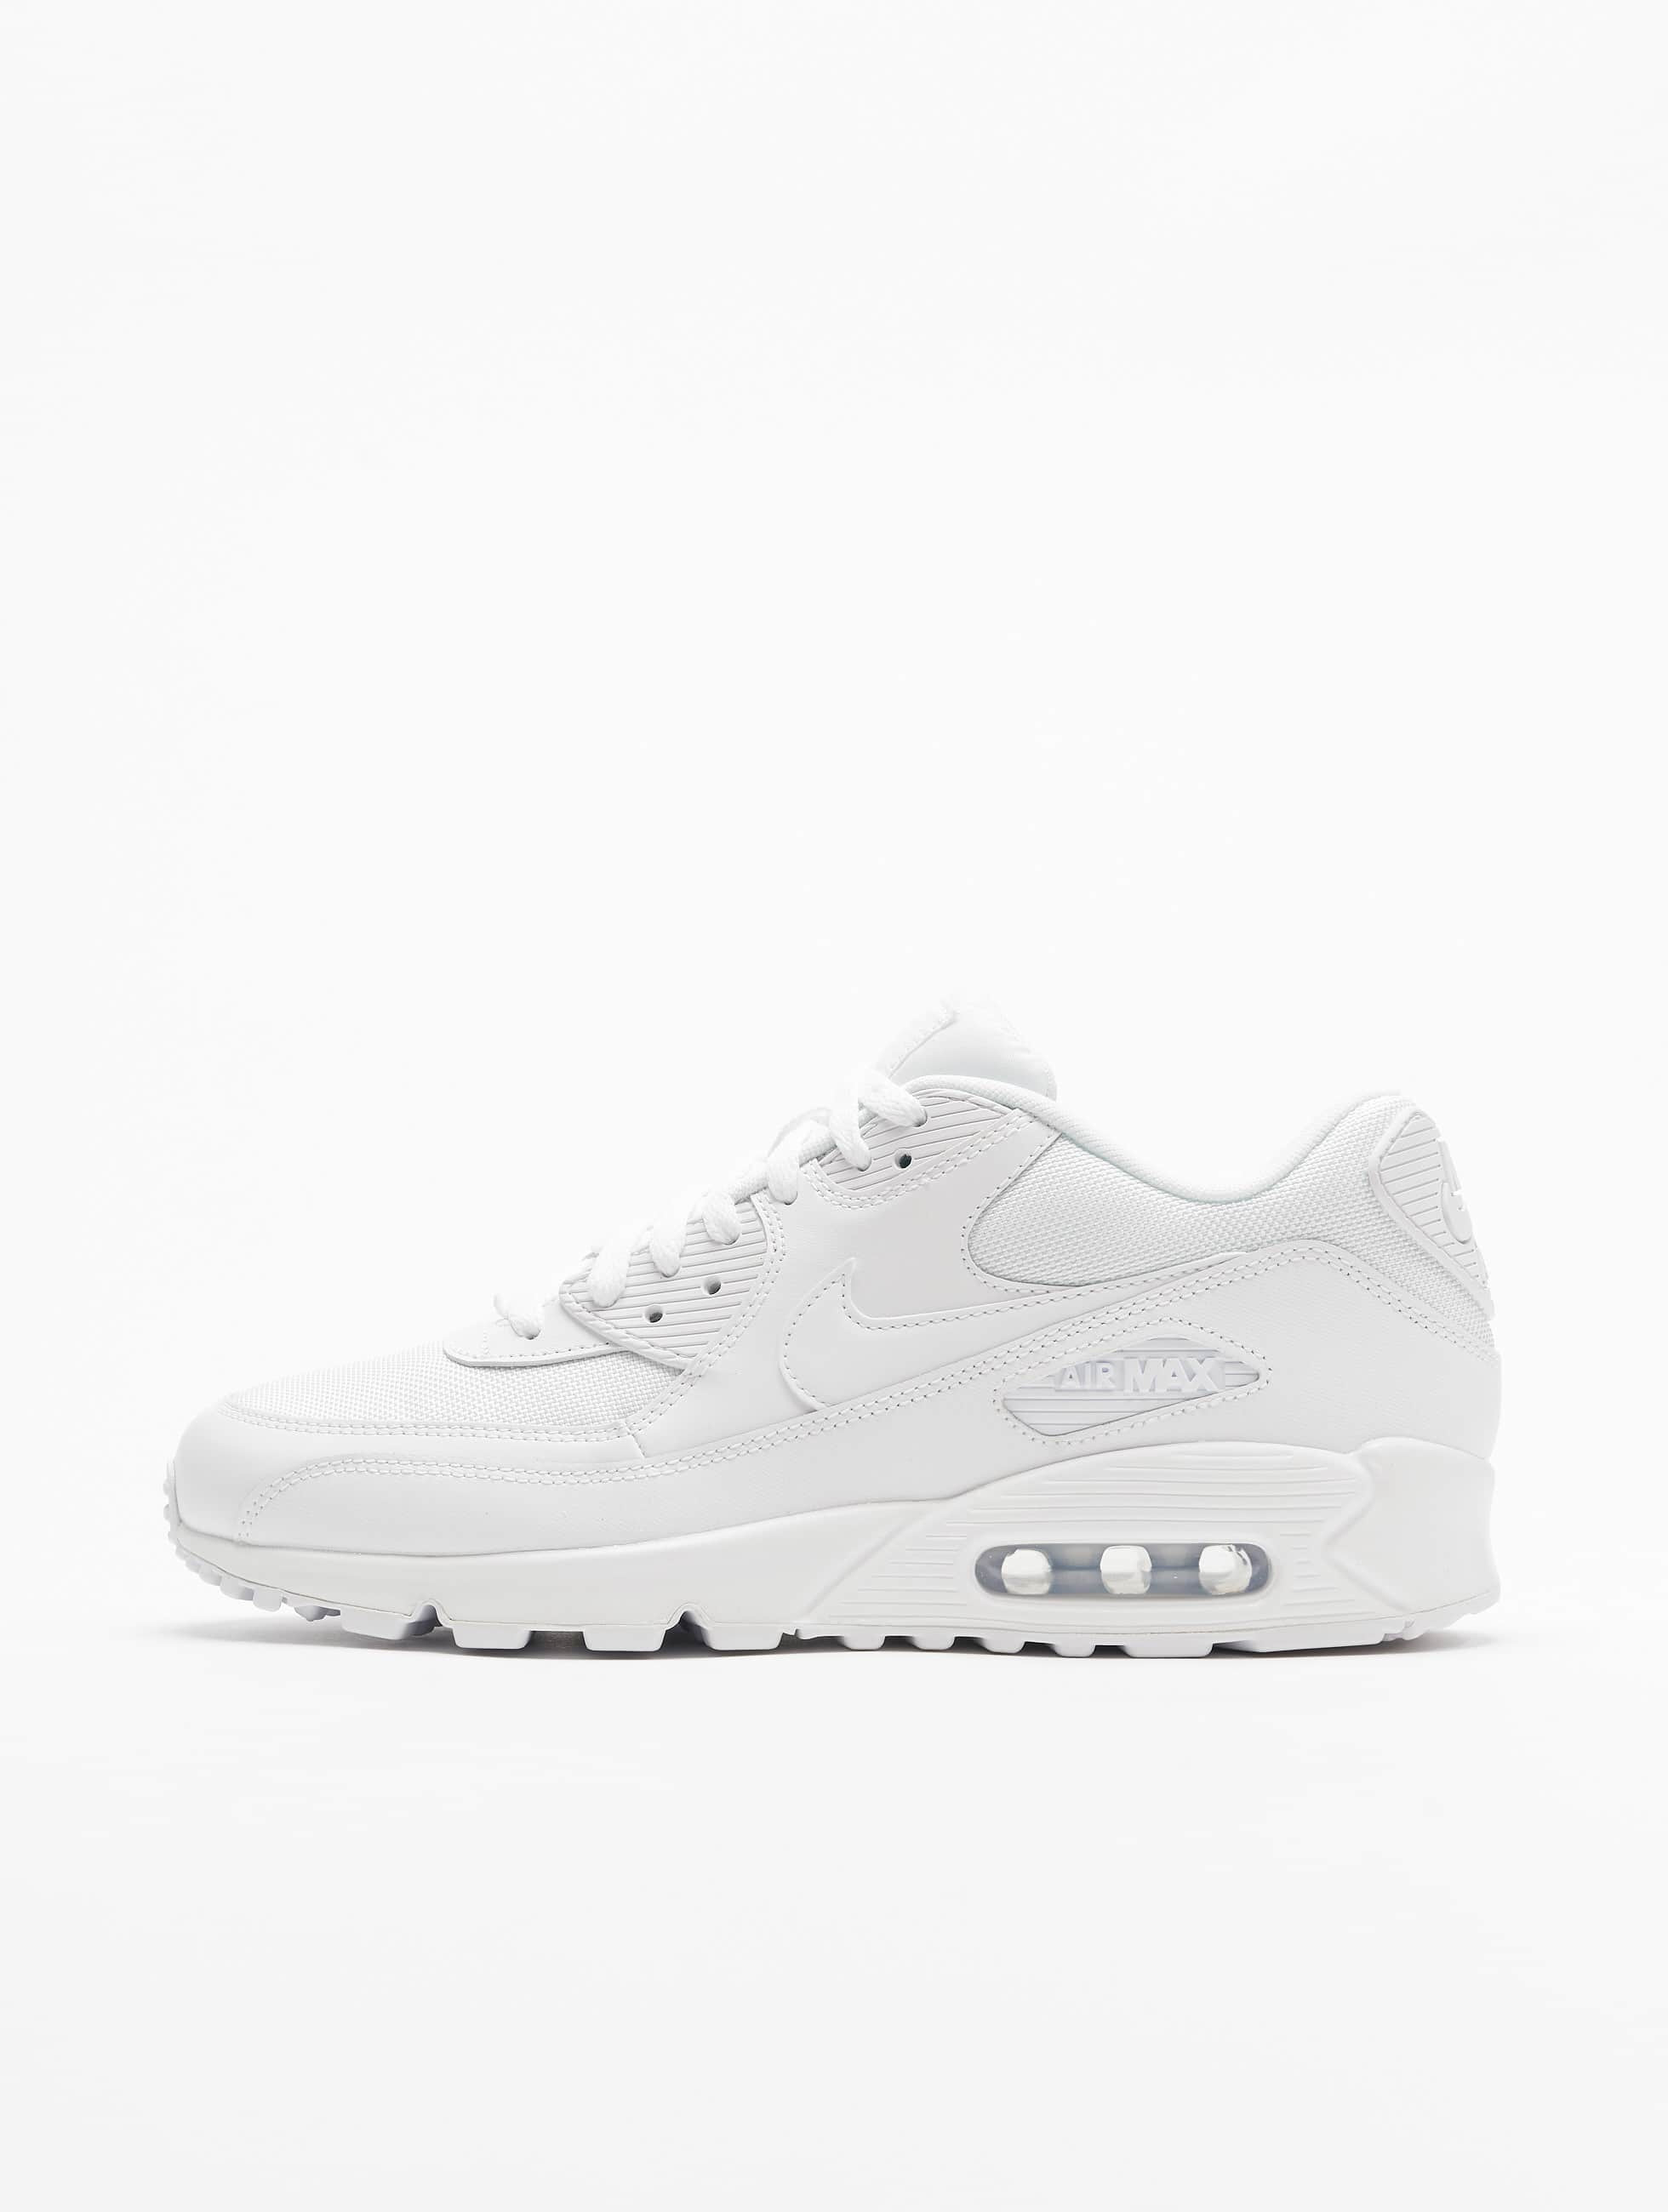 Schuhe / Sneaker Air Max 90 Essential in weiß